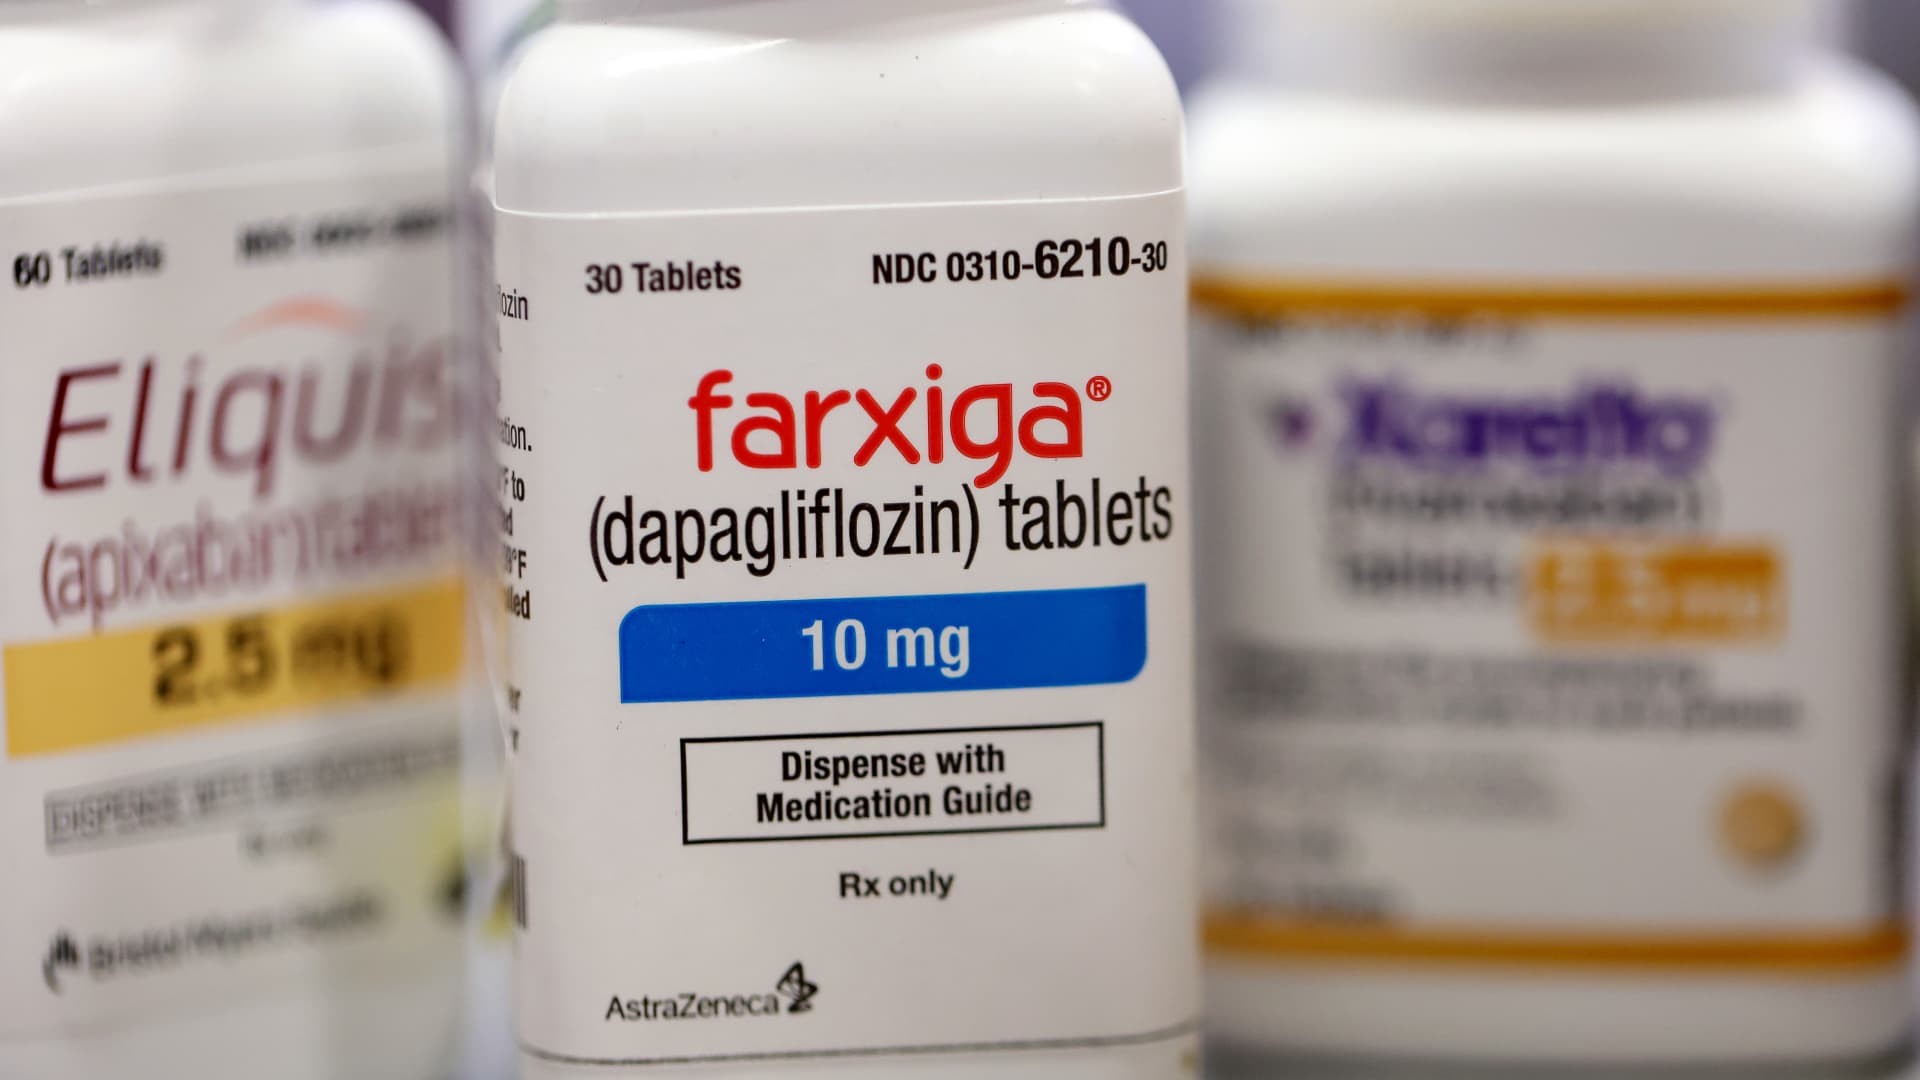 AstraZeneca, Boehringer Ingelheim to participate in Medicare drug price negotiations